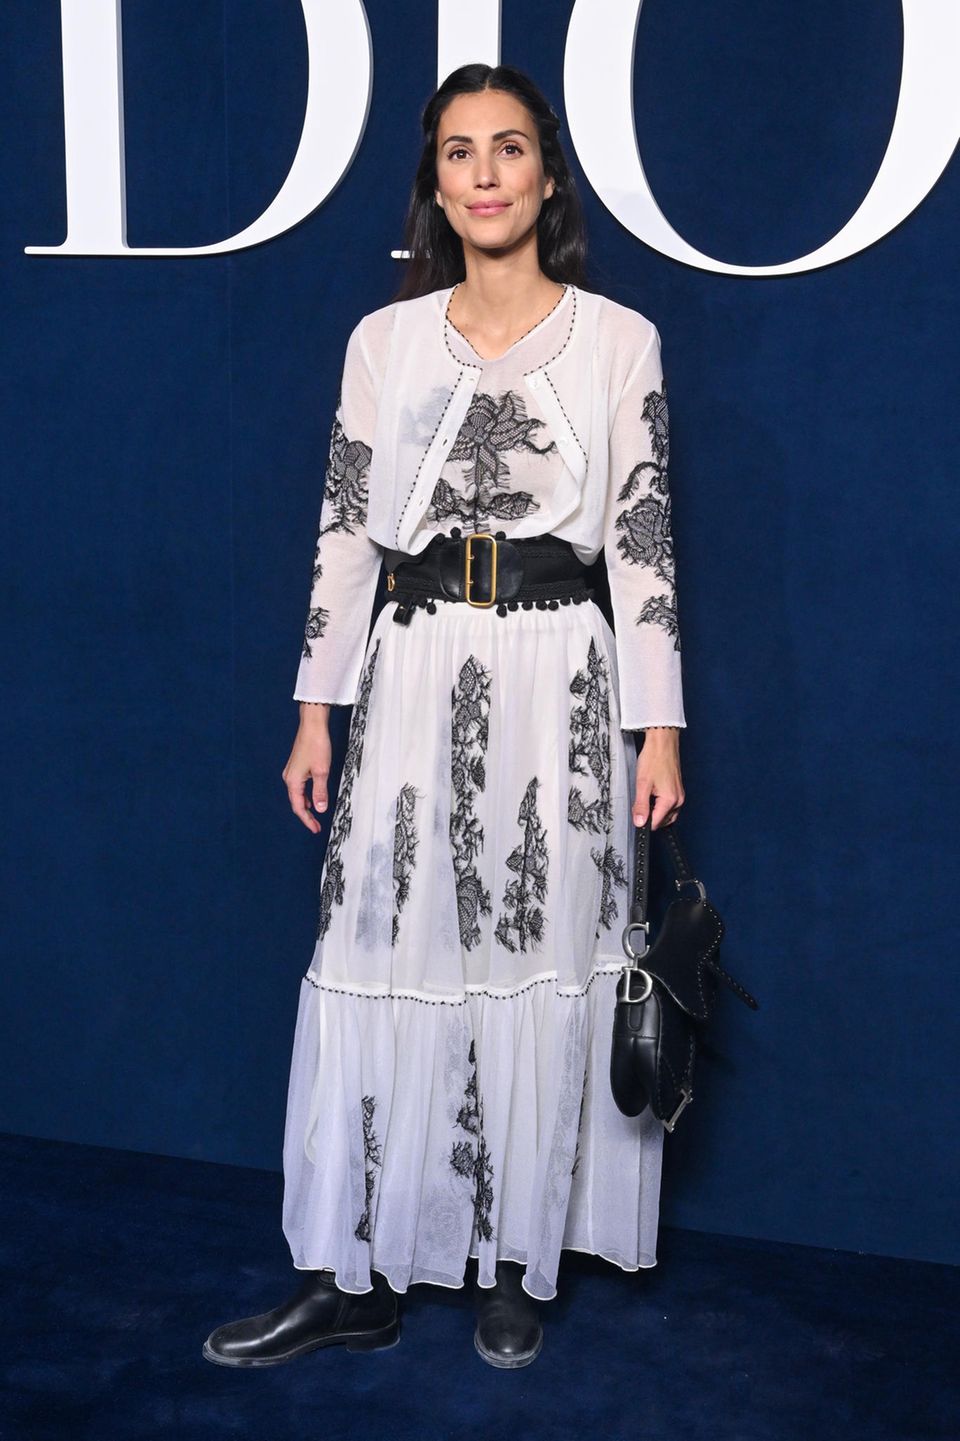 Zur Dior Herbst/Winter Show im Rahmen der Pariser Fashion Week erscheint Alessandra de Osma – natürlich – von Kopf bis Fuß in Dior. Besonders auffällig sind die gewählten Accessoires: Der Gürtel mit Gürteltasche und die schwarze Saddle-Bag geben dem Outfit einen lässigen Touch.